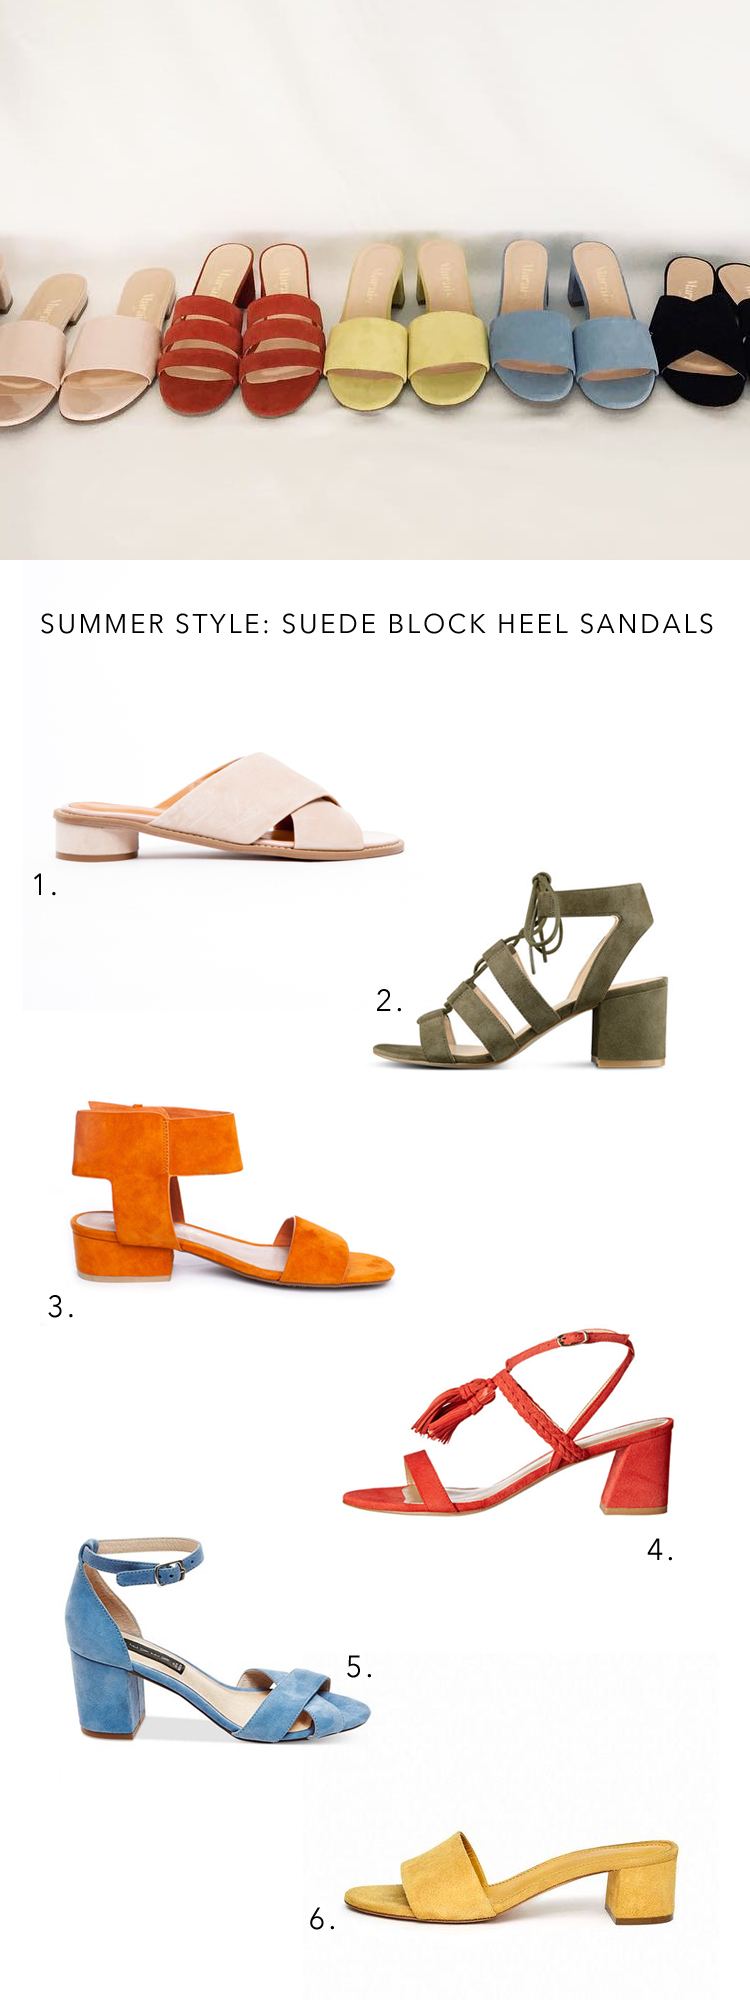 the best block heel suede sandals for summer via @citysage